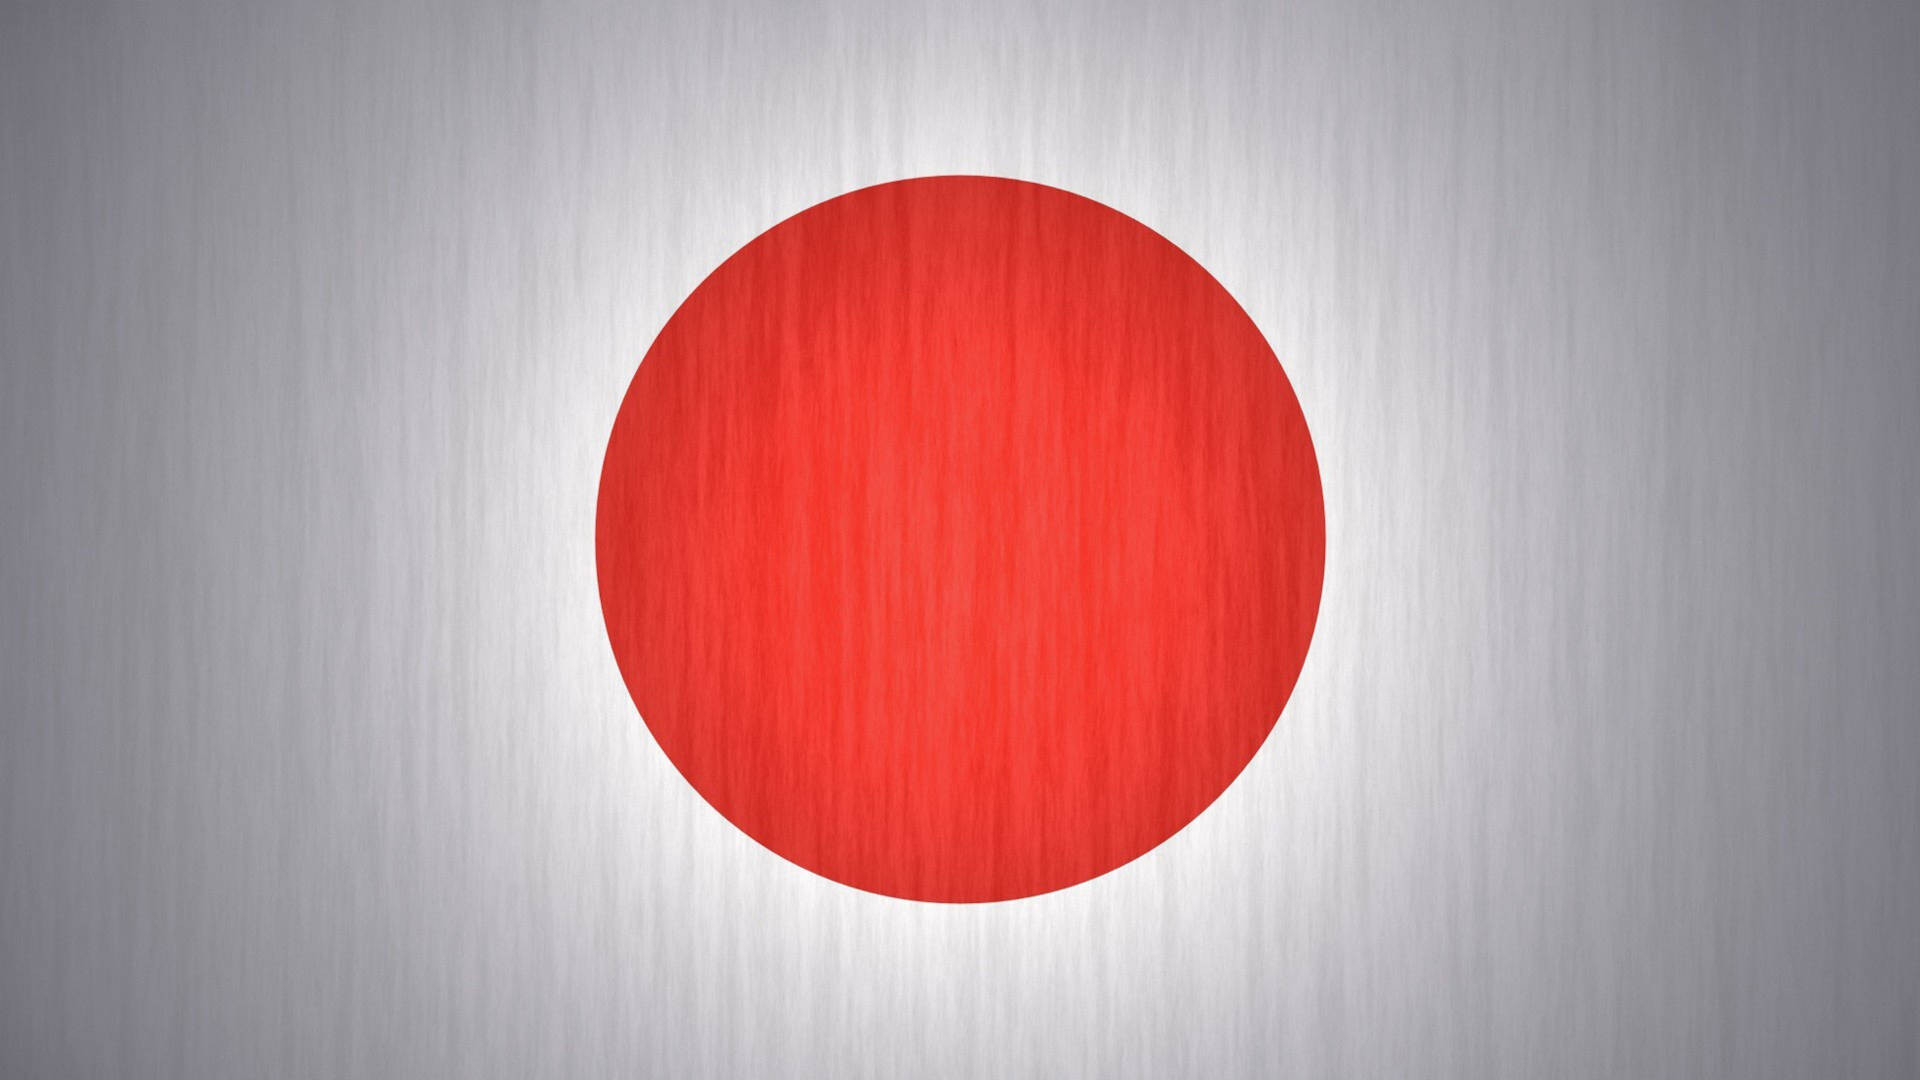 Banderade Japón Con Fondo Gris Cepillado Fondo de pantalla